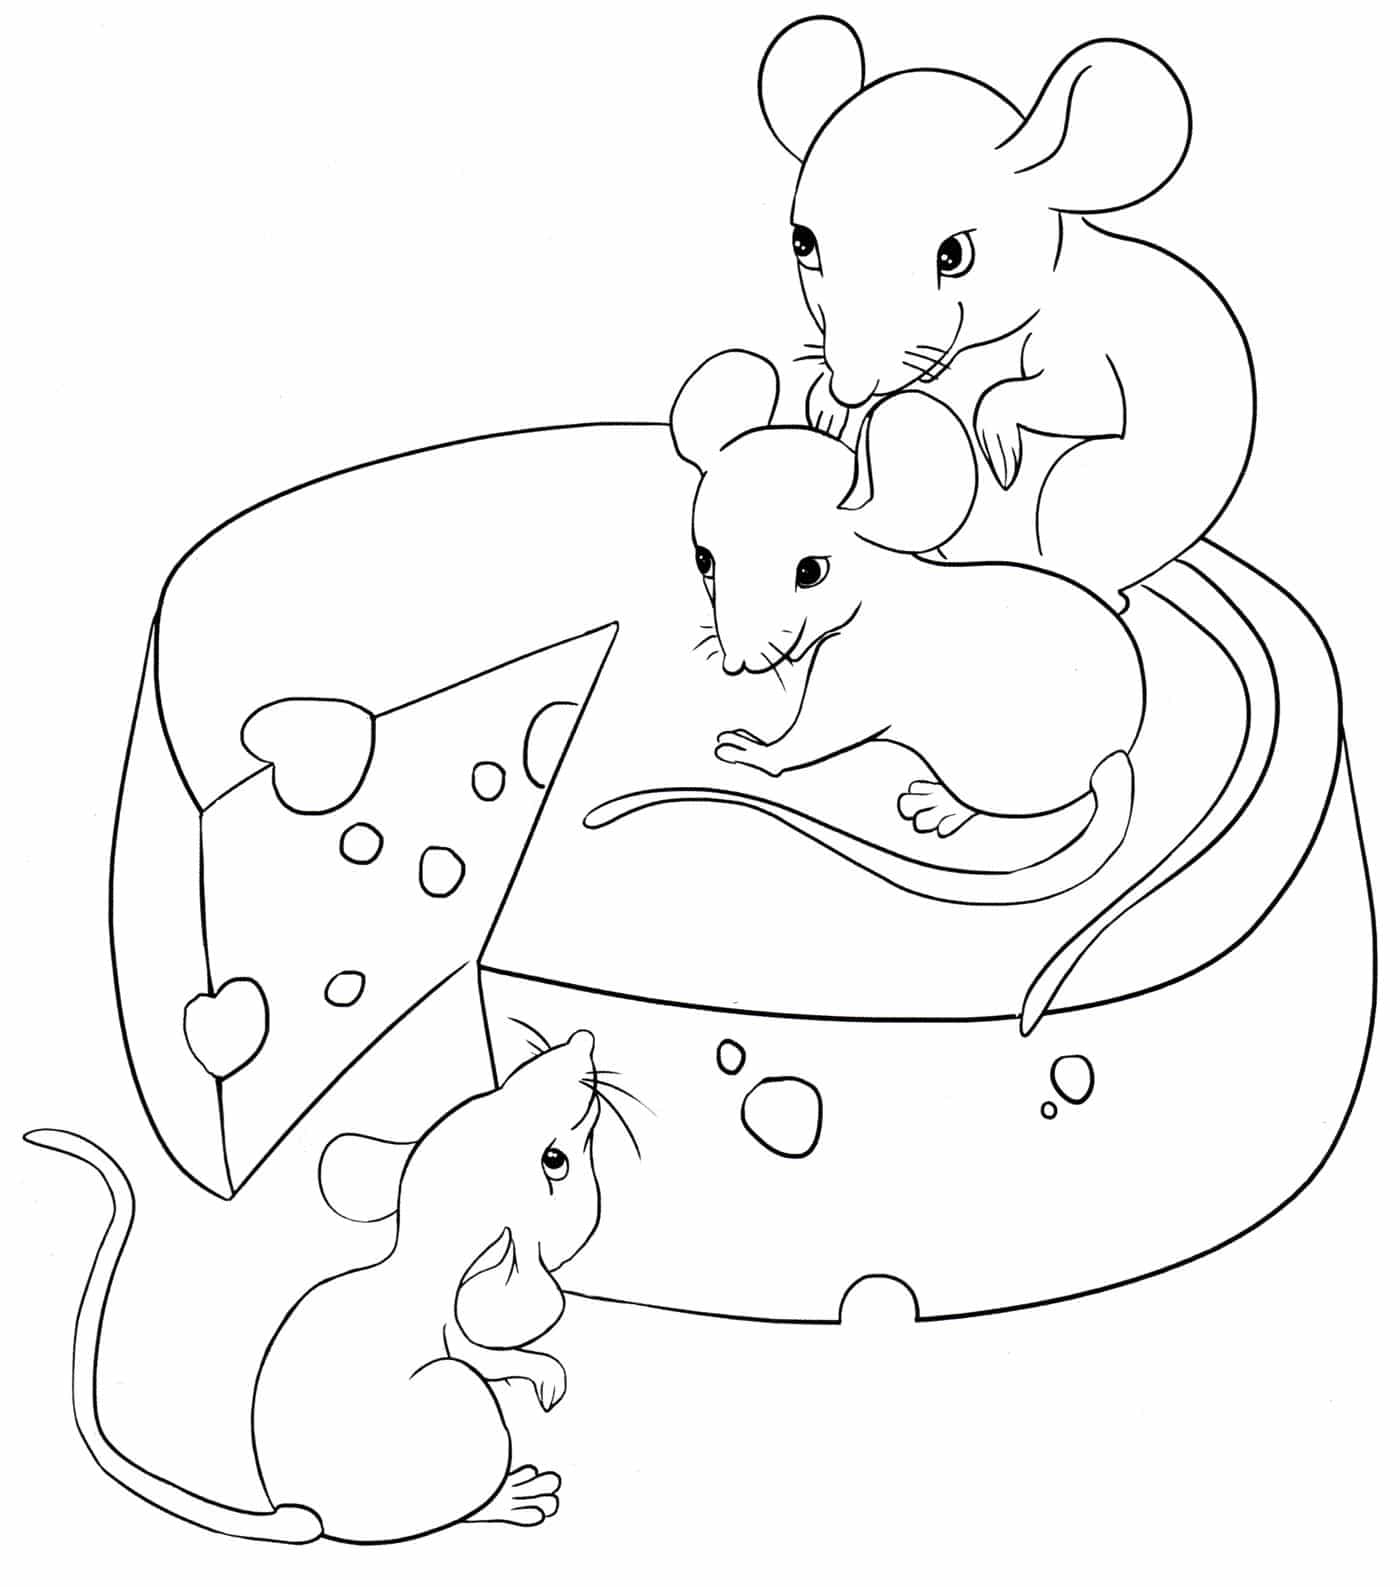 דף צביעה ציור של שלושה עכברים אוכלים גבינה צהובה